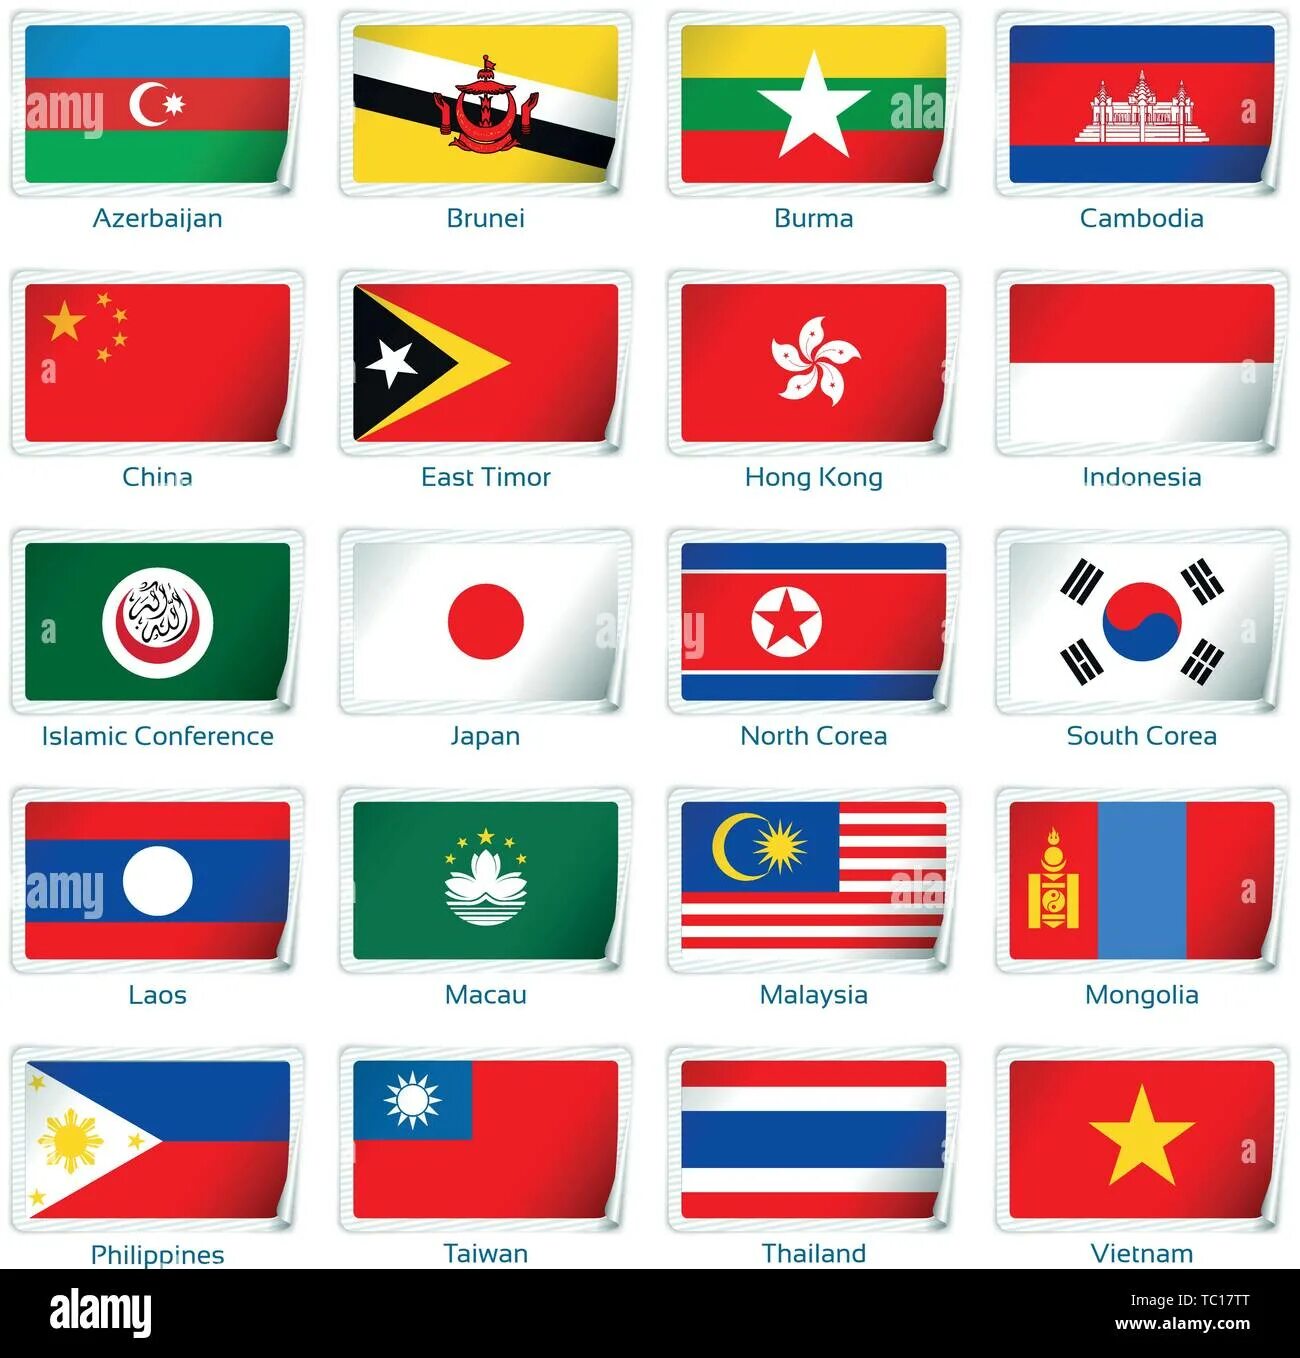 Флаги стран Азии с названиями страны на русском языке. Флаги Азии стран Азии. Западный Тимор Индонезия флаг. Флаги республик средней Азии.